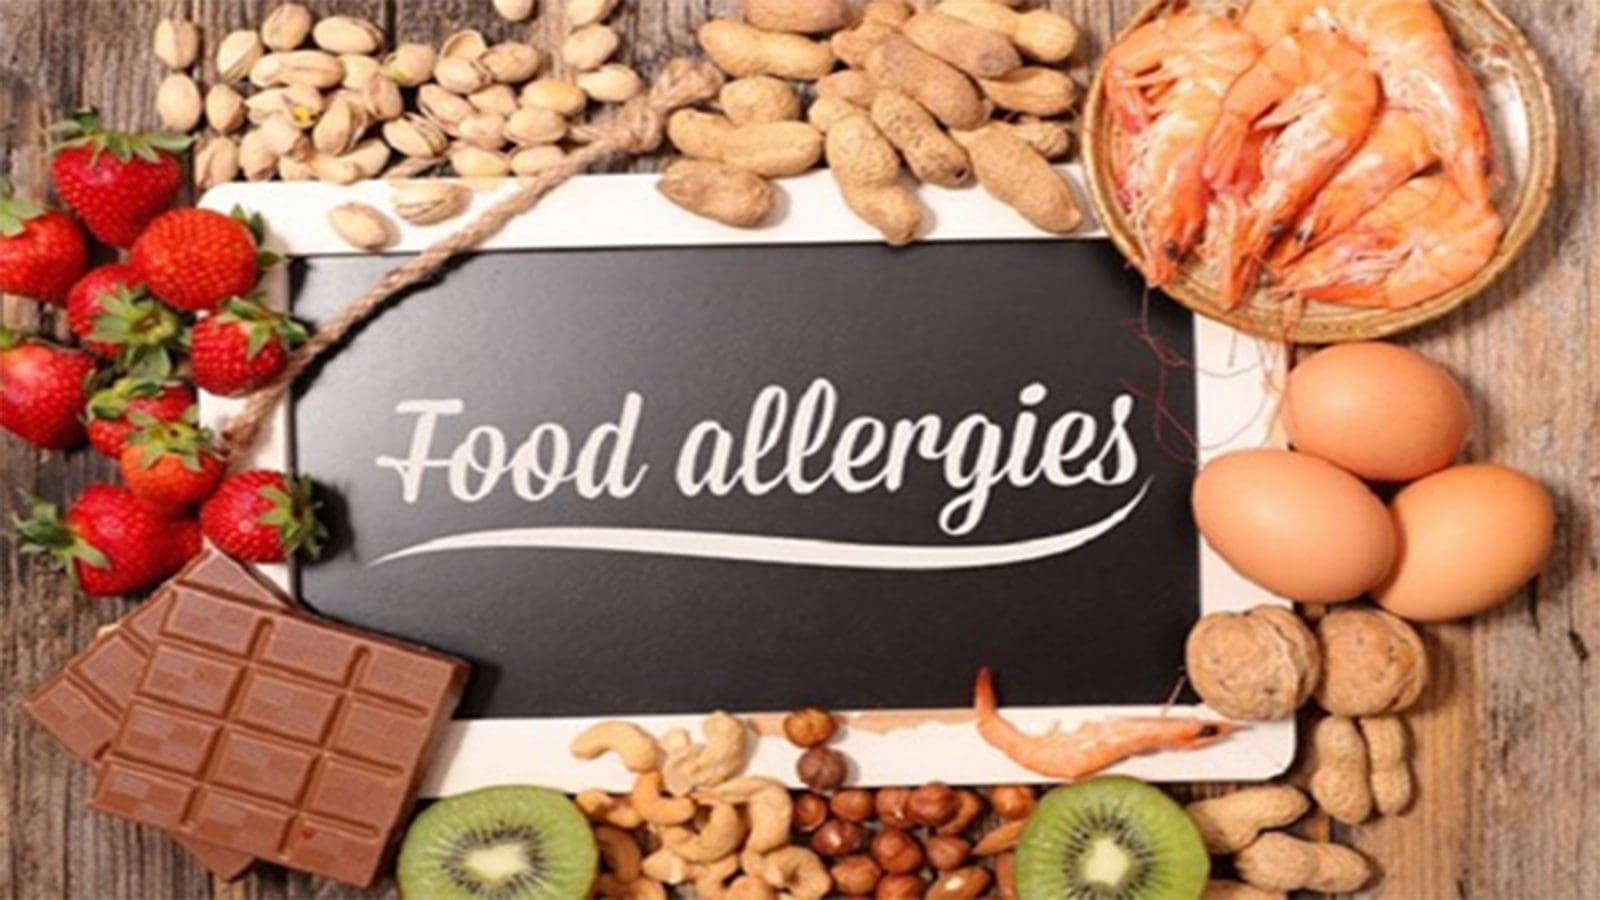 Allergen Bureau publishes guide to aid in mitigating allergen cross-contamination